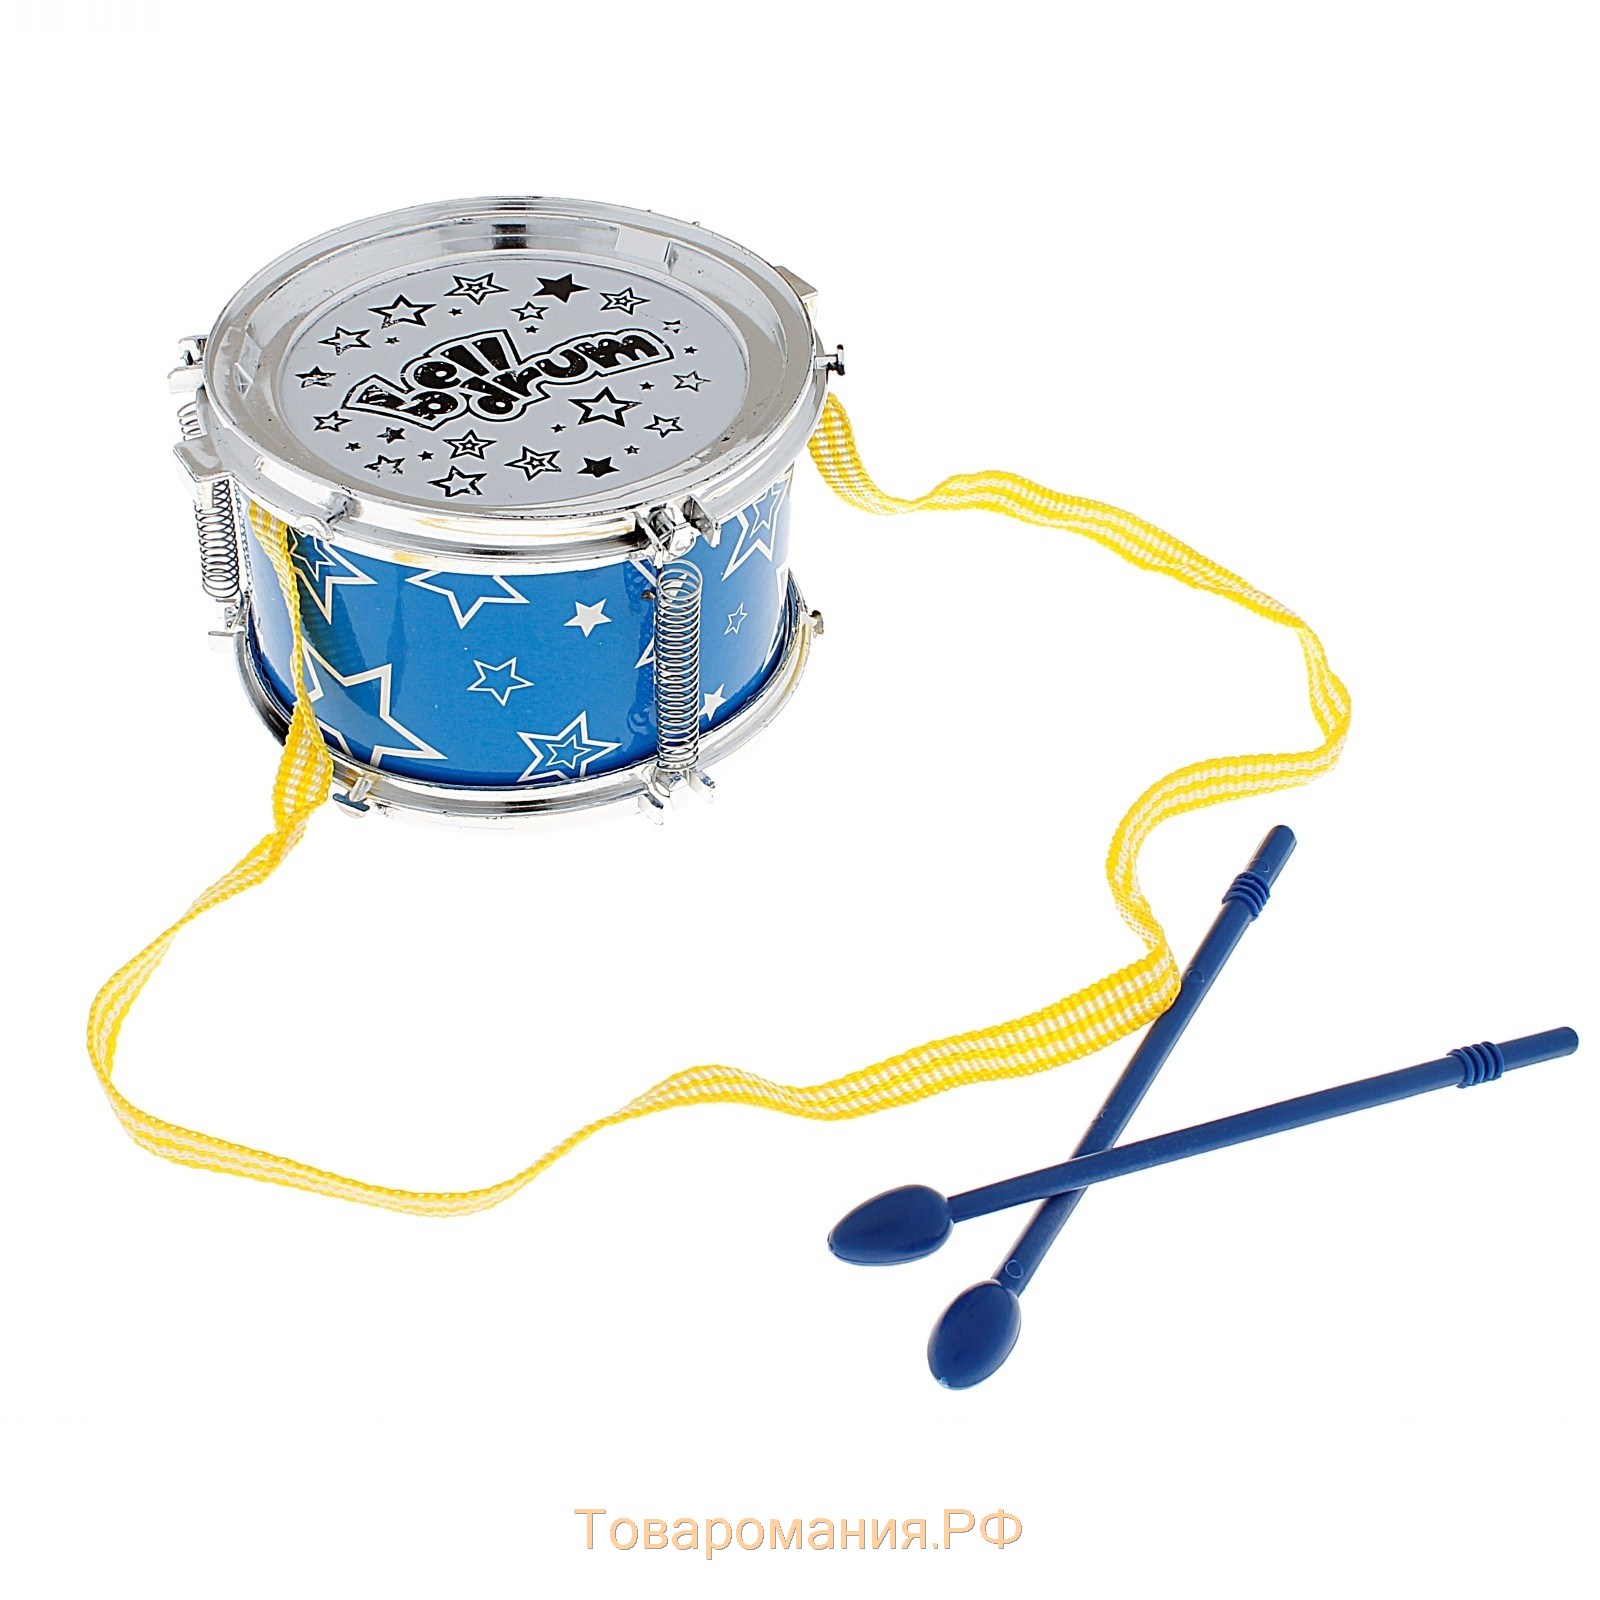 Игрушка барабан «Весёлые минутки», d=11 см, для детей, цвета МИКС